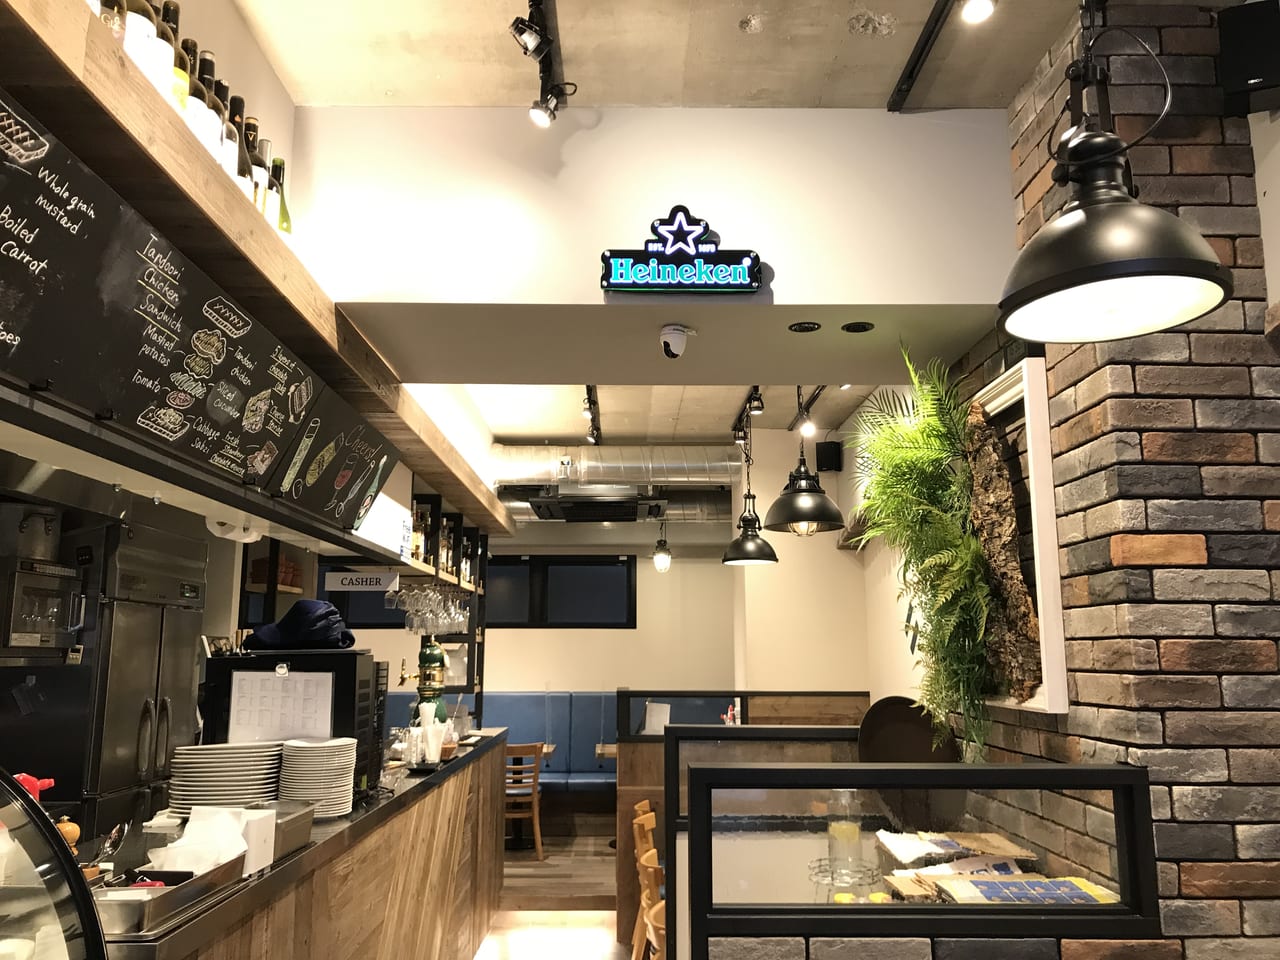 世田谷区尾山台に「サンドイッチカフェ＆バー　チェルシーストリートカフェ」が2022年2月23日にオープンしました。